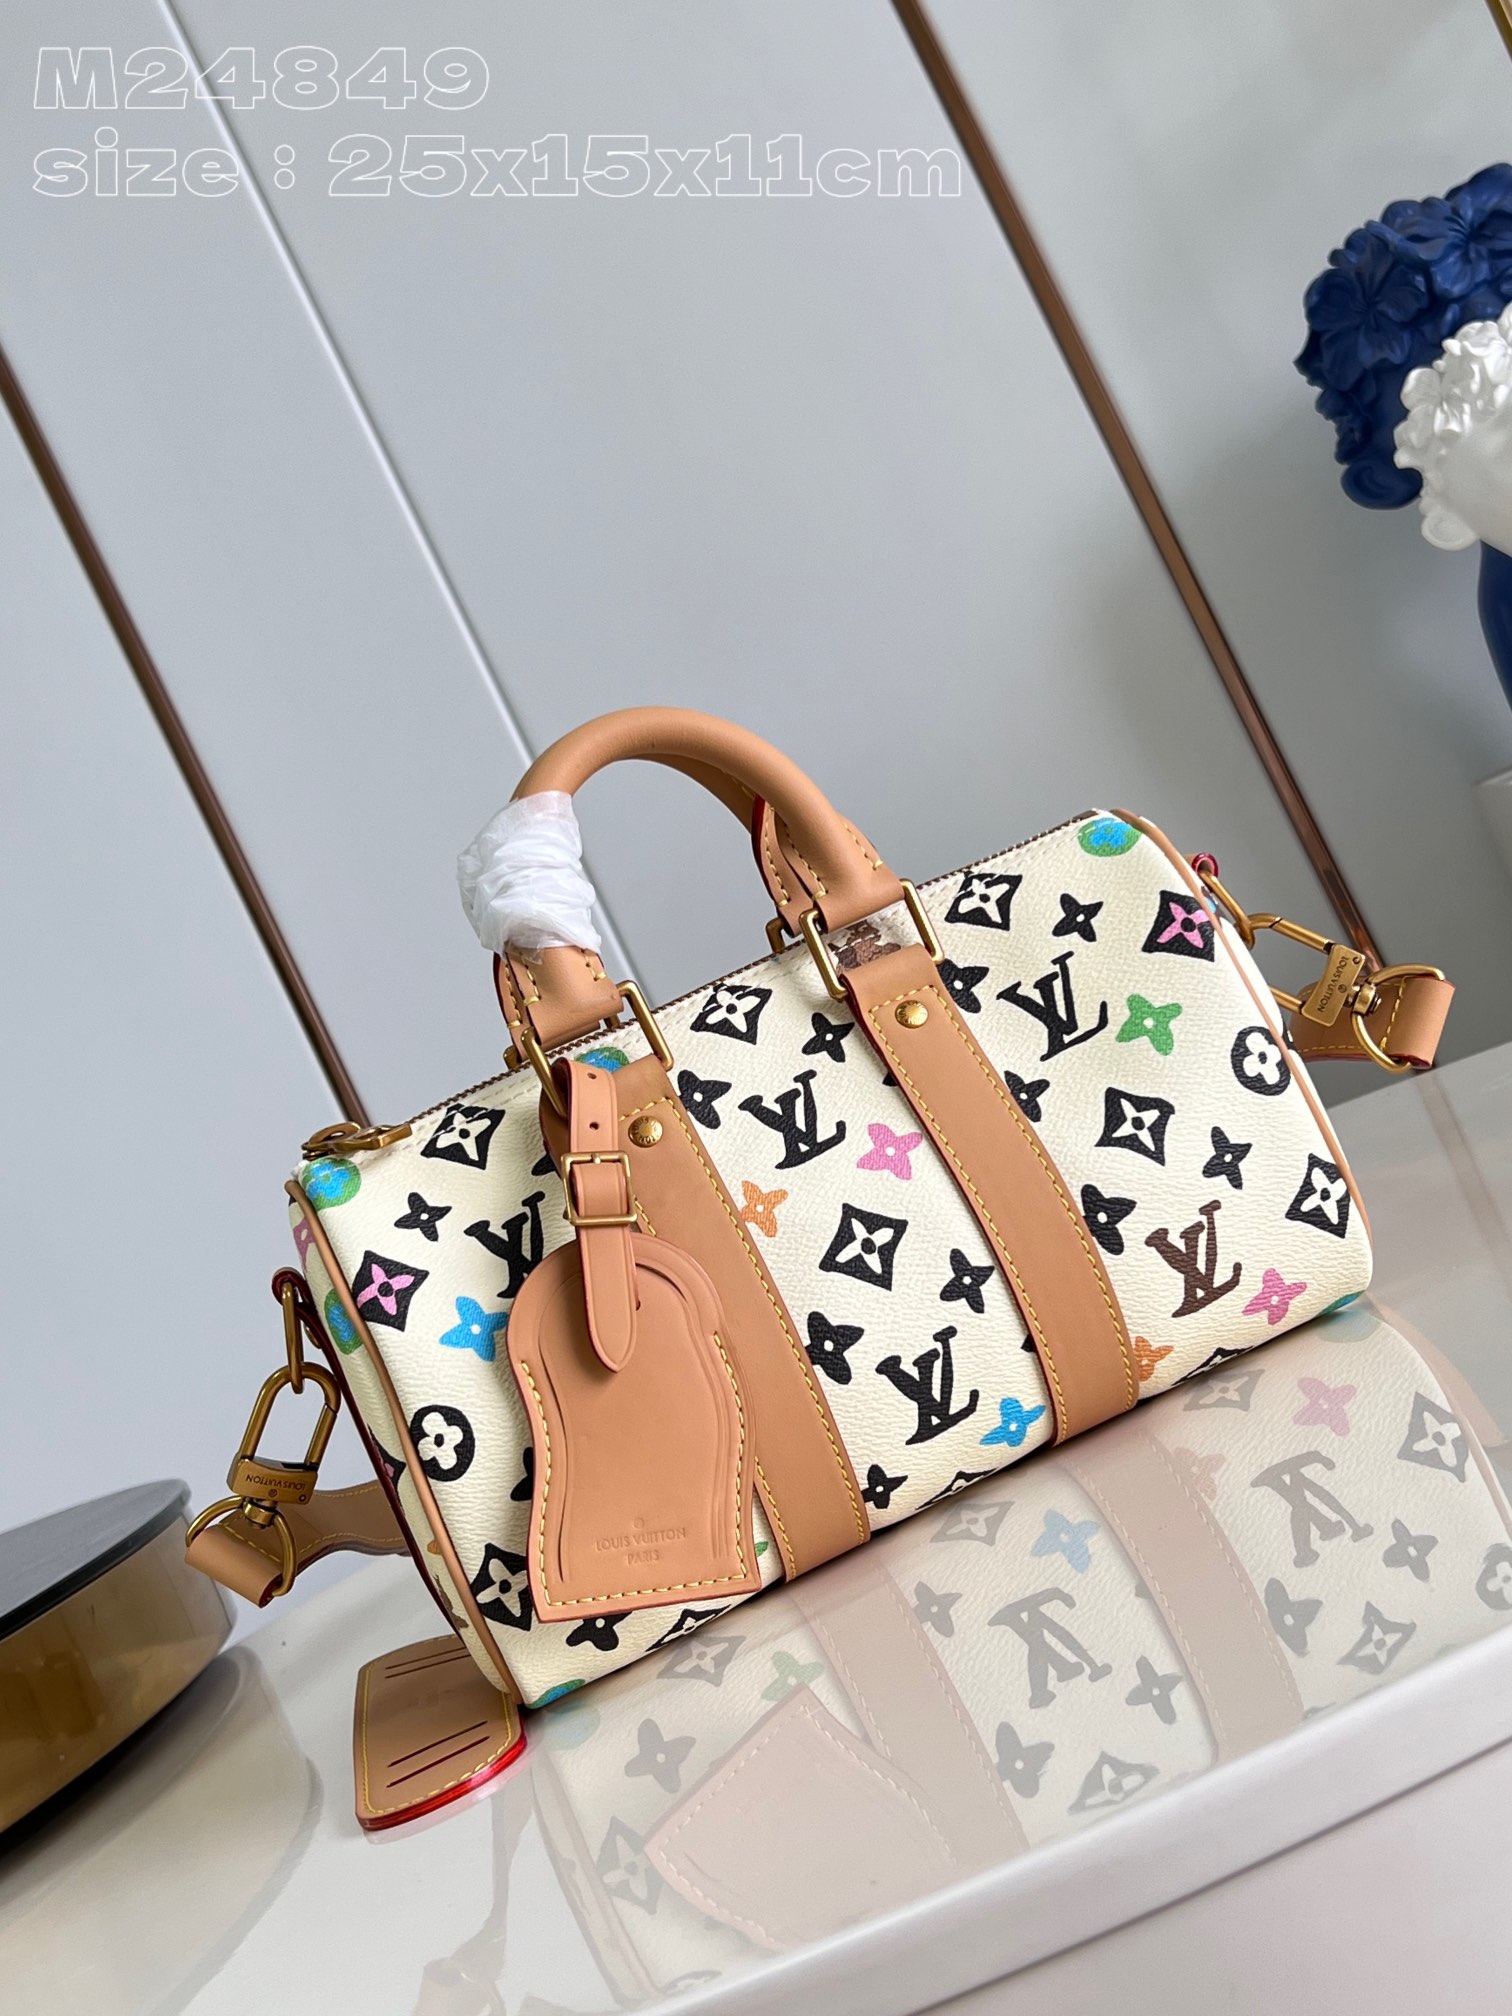 Louis Vuitton LV Keepall Bags Handbags White Canvas M24849